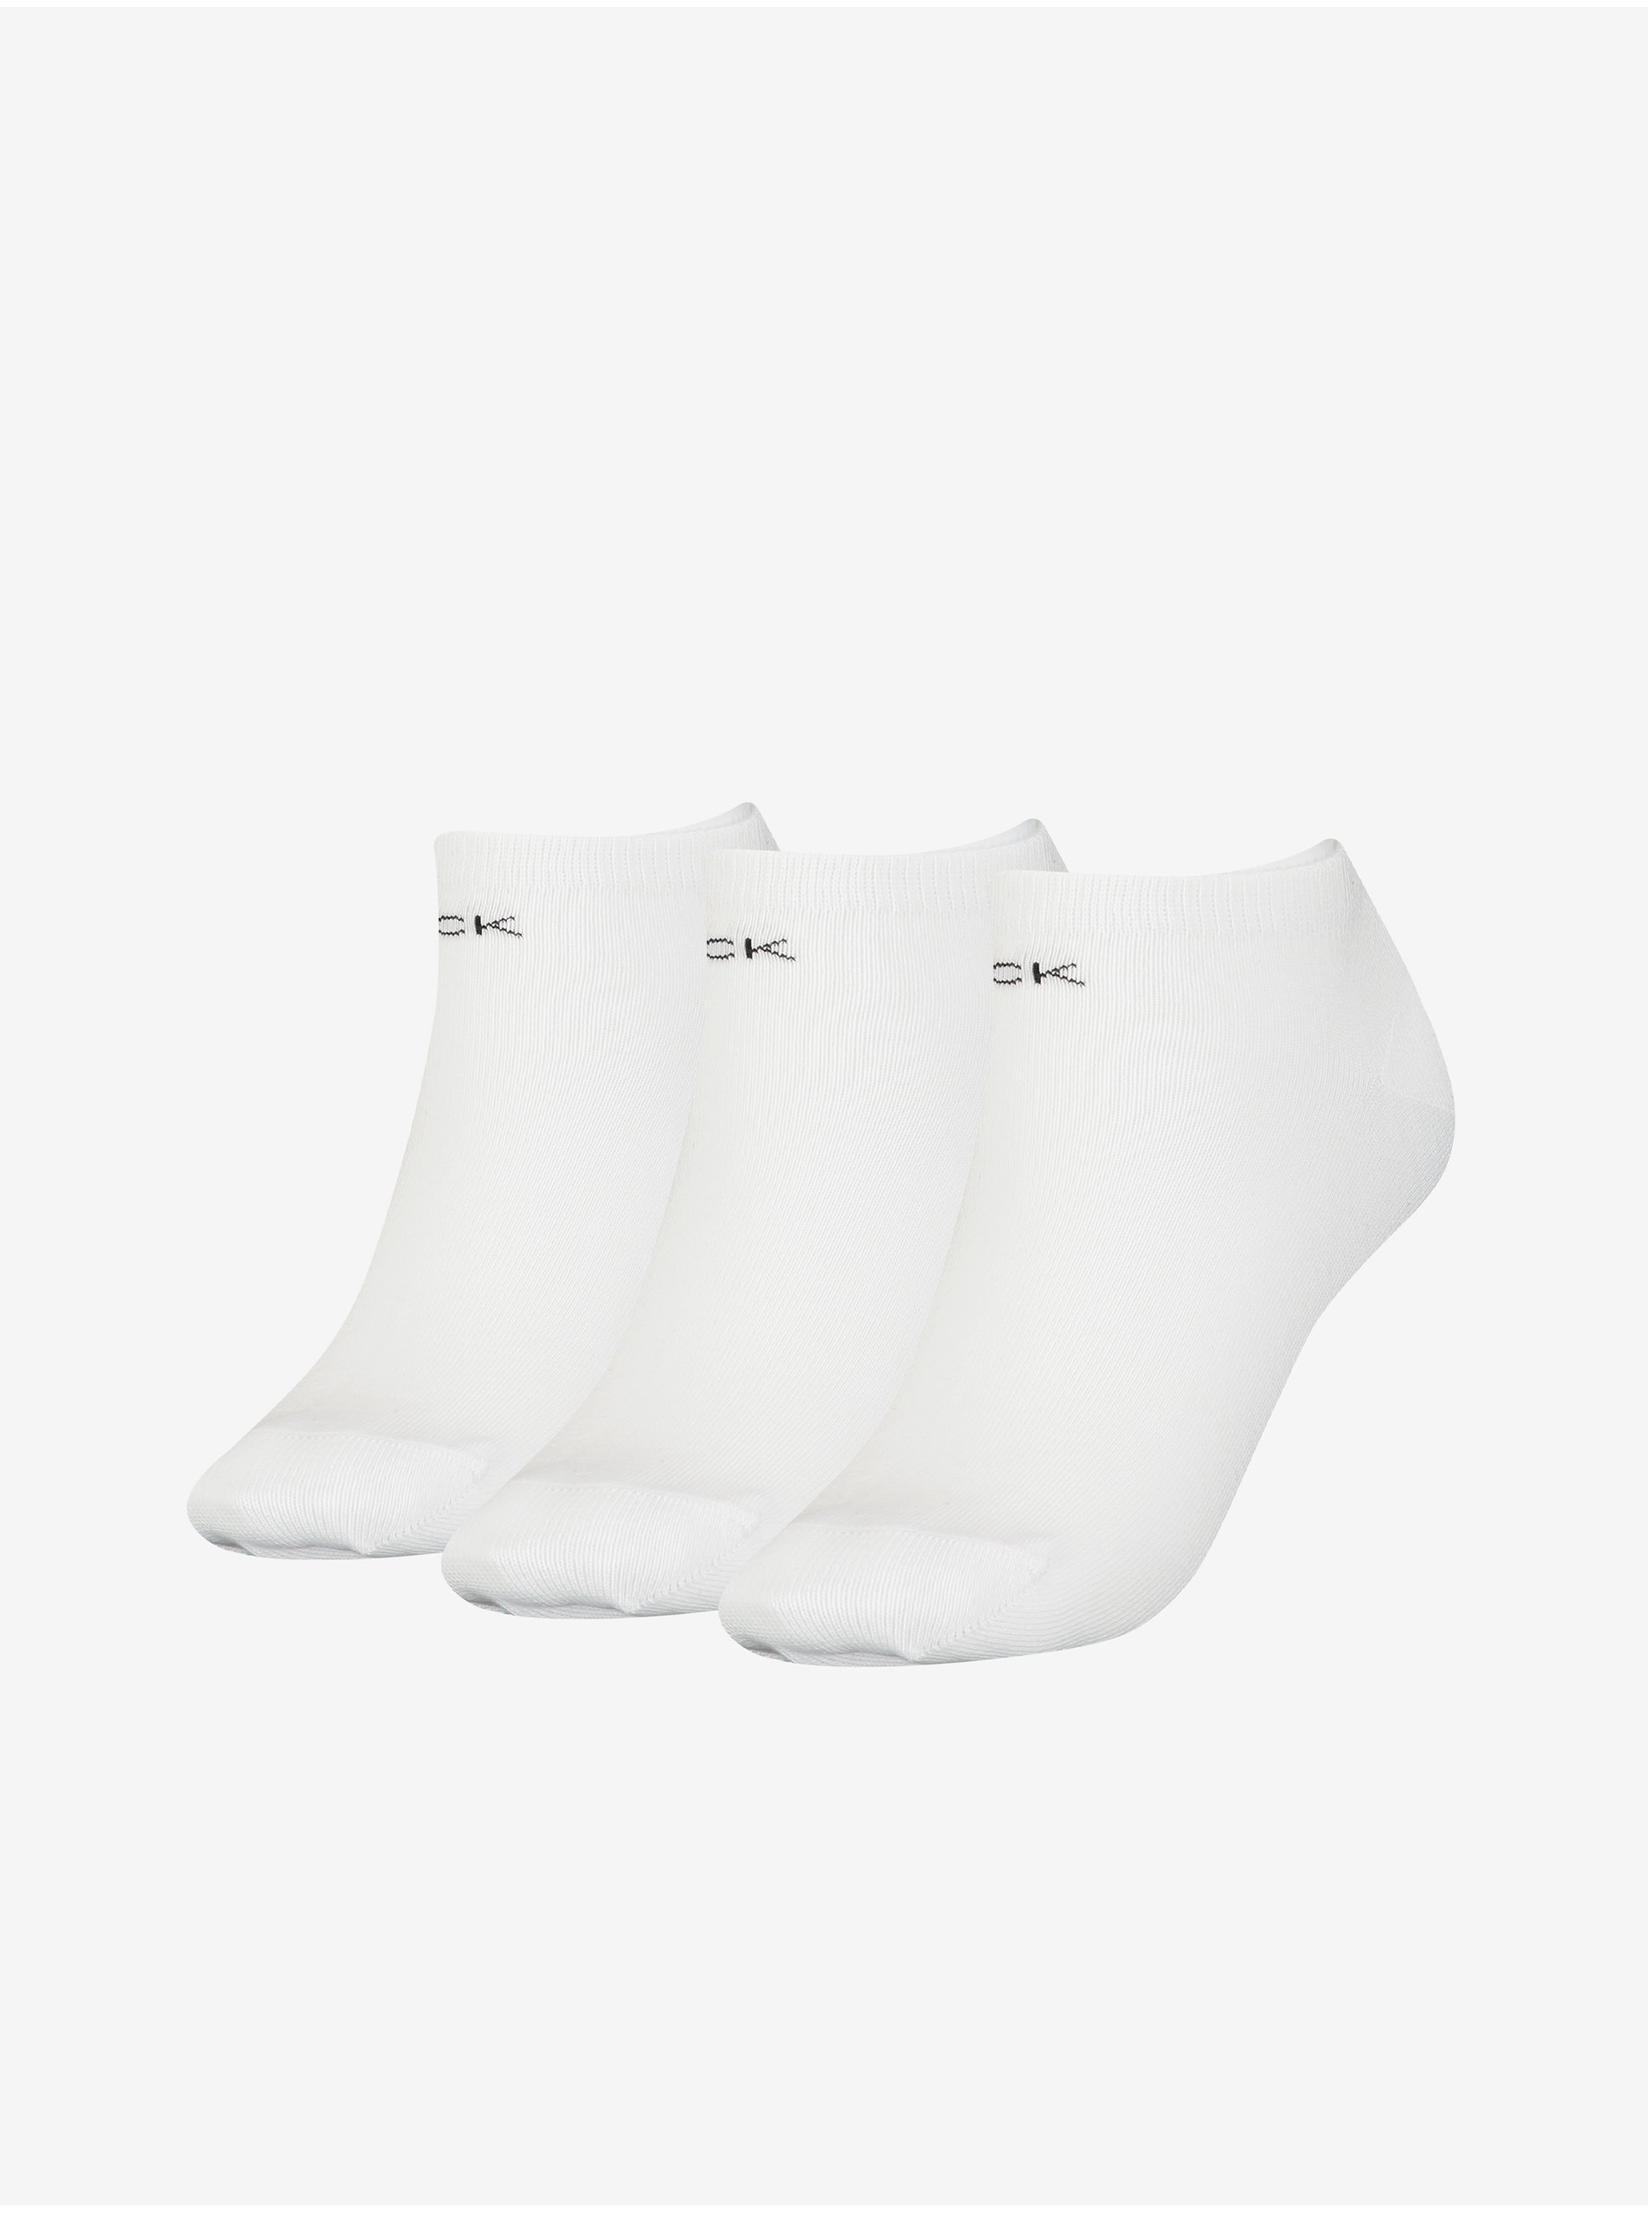 Slike CALVIN KLEIN Ženske čarape 3/1 bele